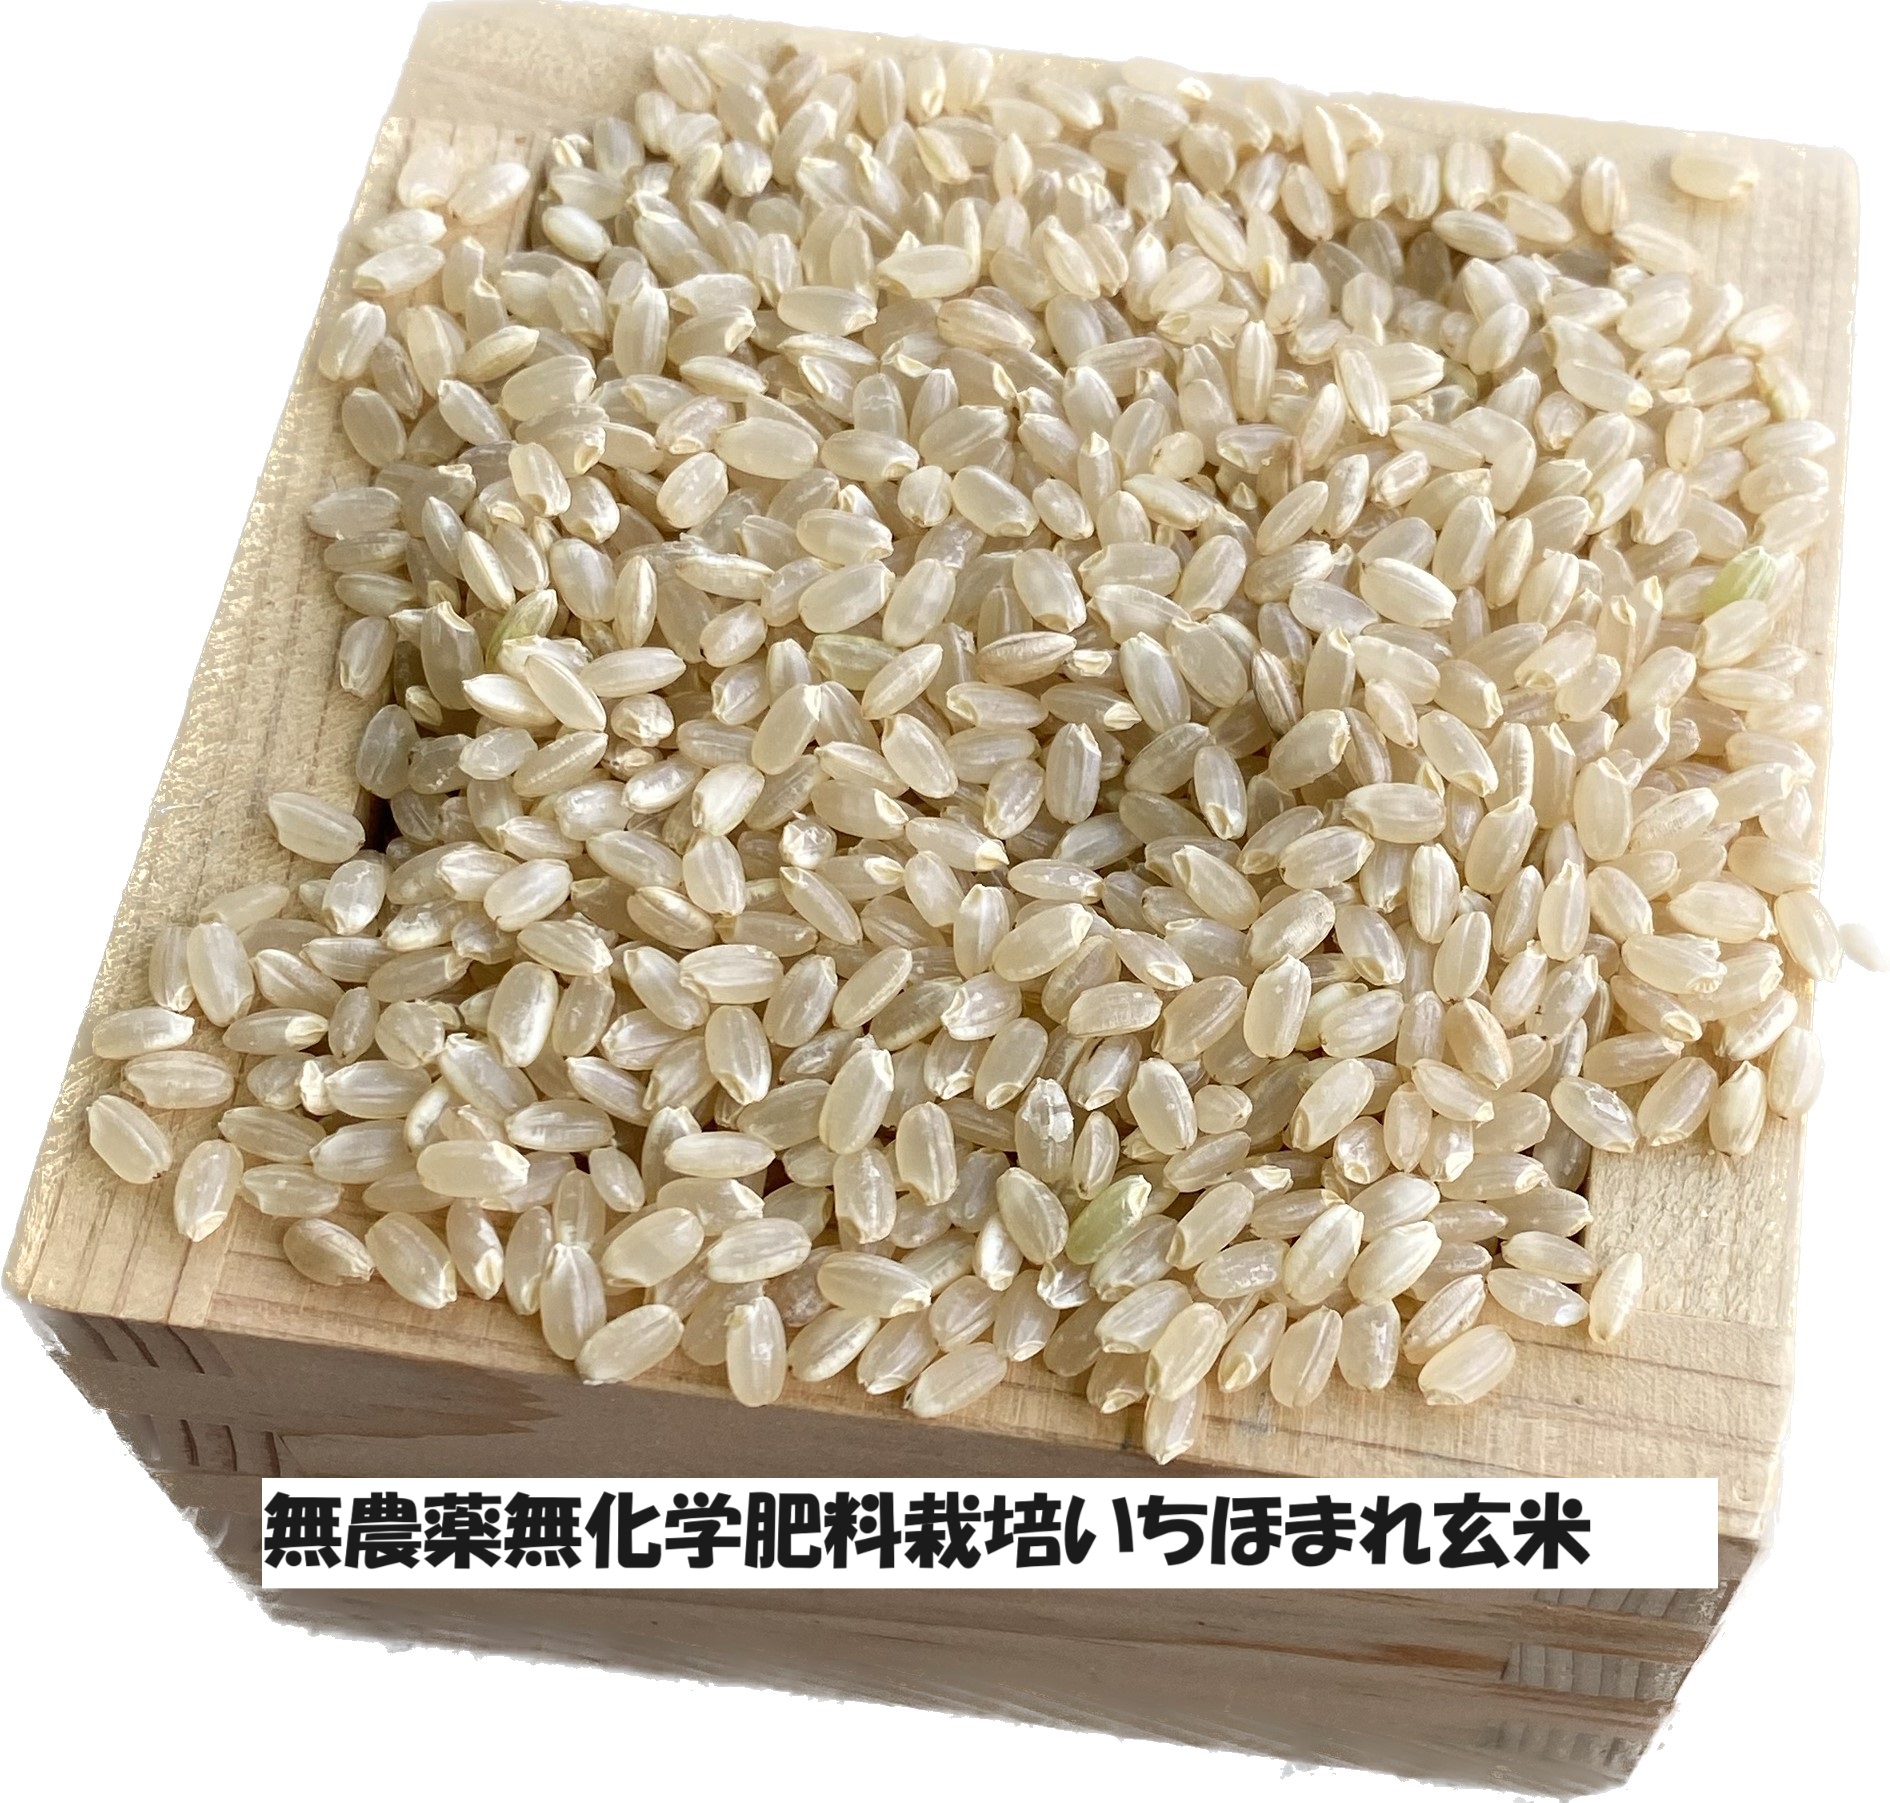 冬眠米,備蓄米,無洗米や長期保存米,ひのひかり、災害備蓄品などの白米